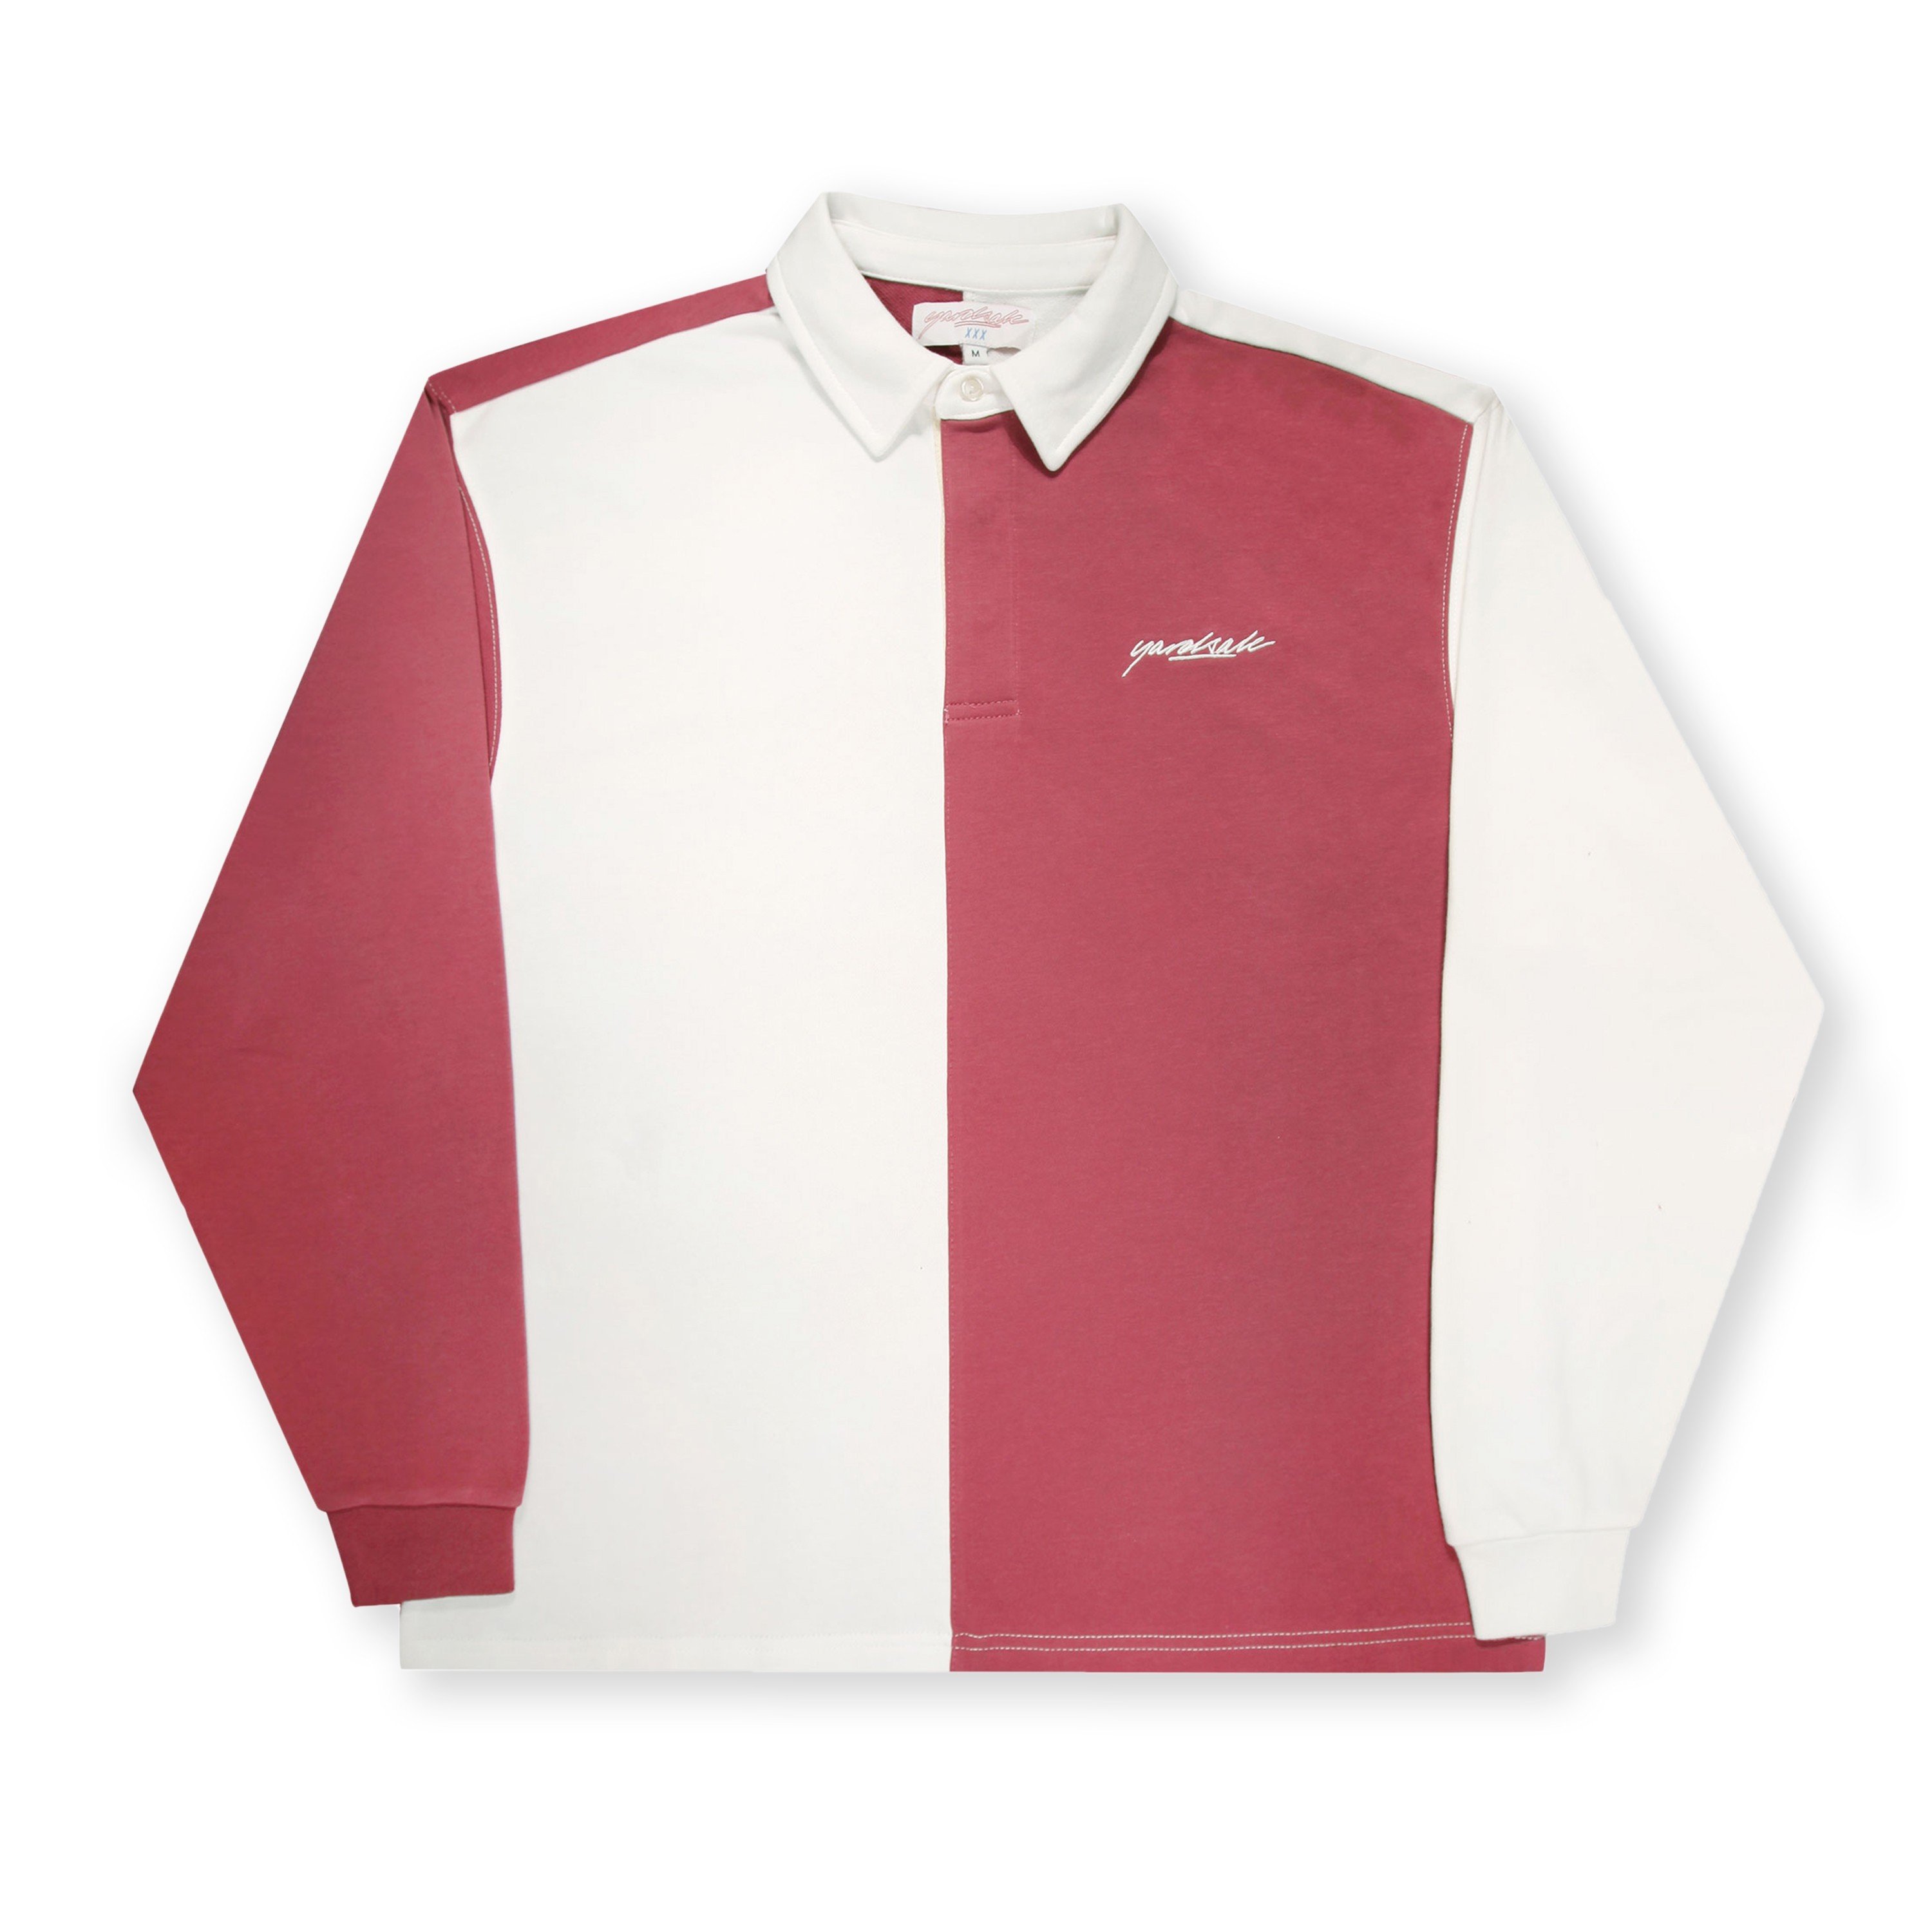 Yardsale Puzzle Long Sleeve Polo Shirt (Burgundy/White) - YS-F20 